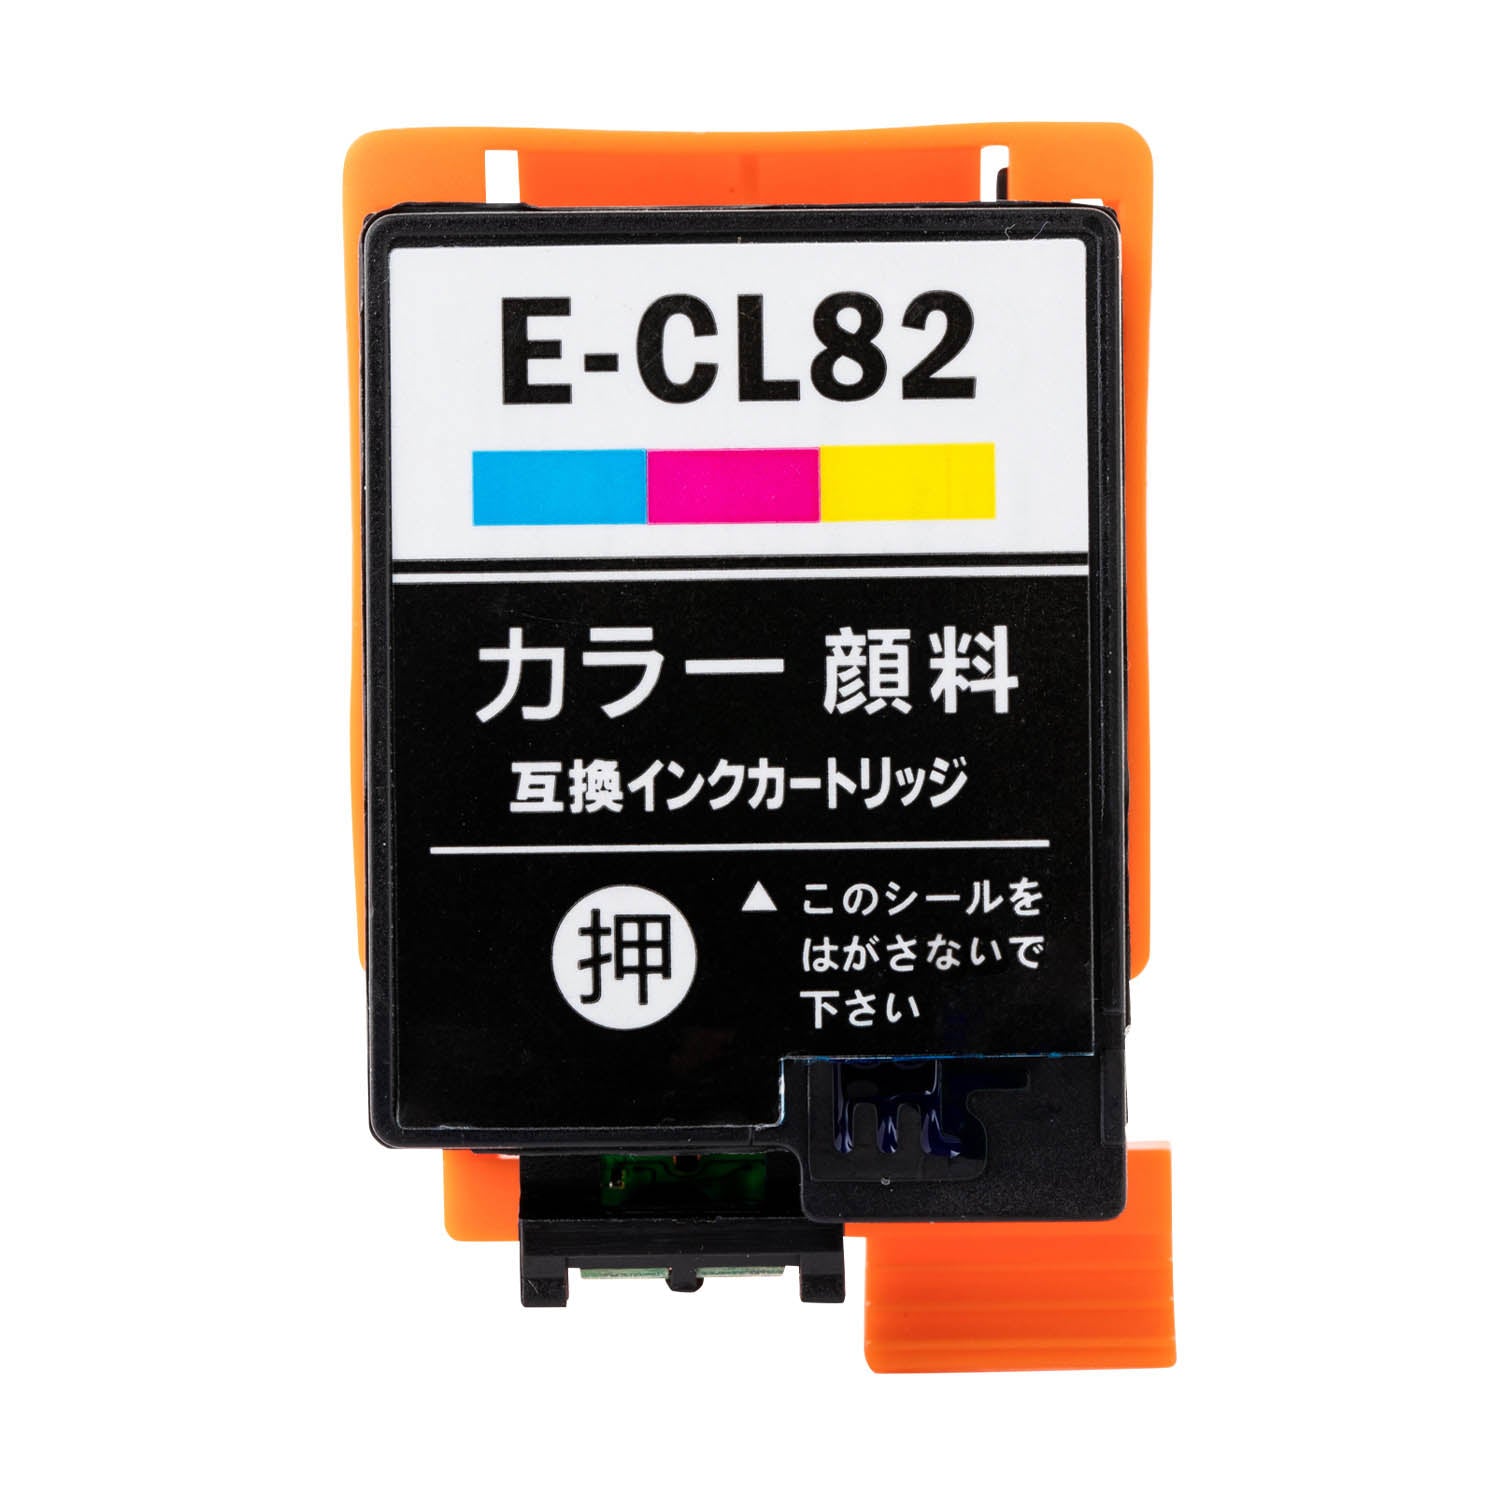 エプソン用 ICCL82 (アタッシュケース) 互換インク カラー3色